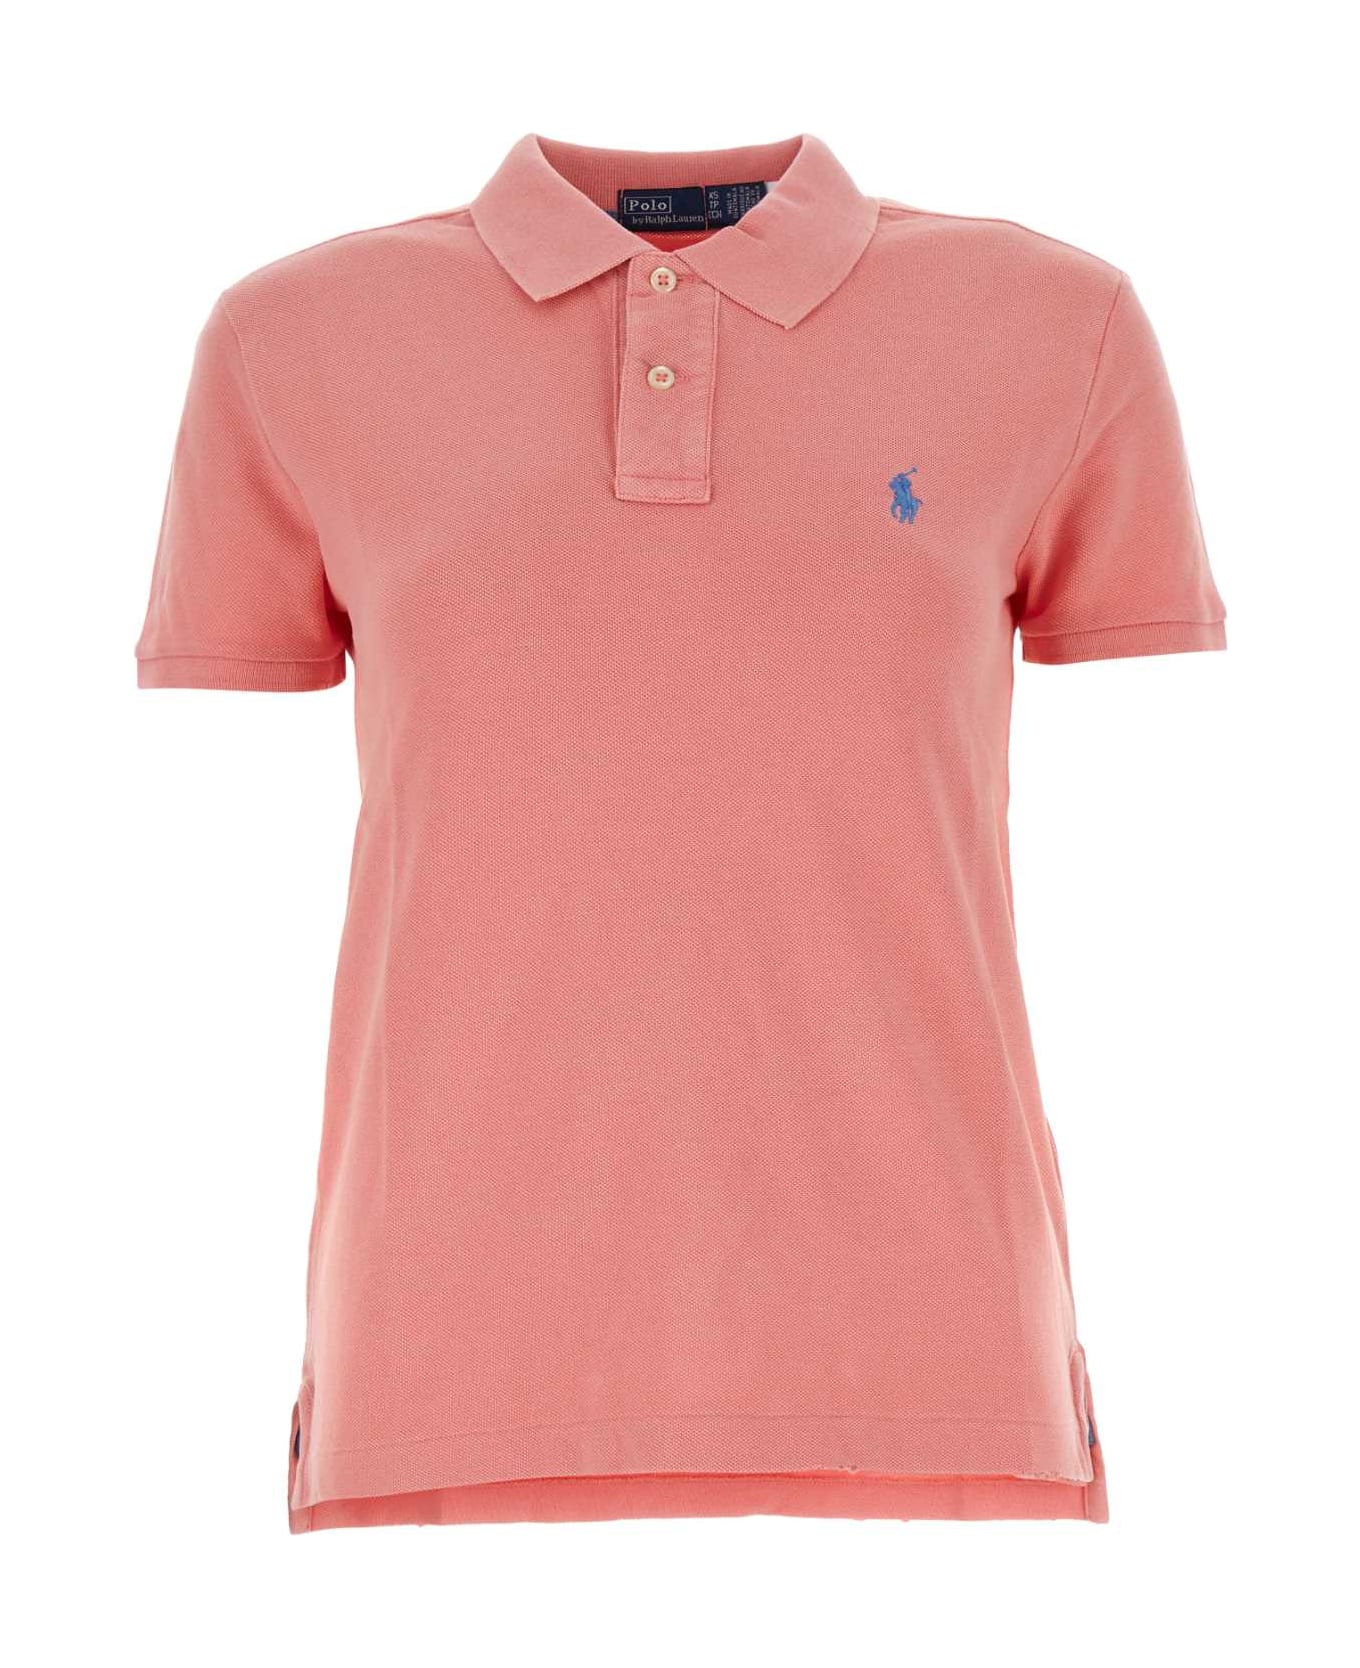 Polo Ralph Lauren Dark Pink Piquet Polo Shirt - RIBBONPINK ポロシャツ